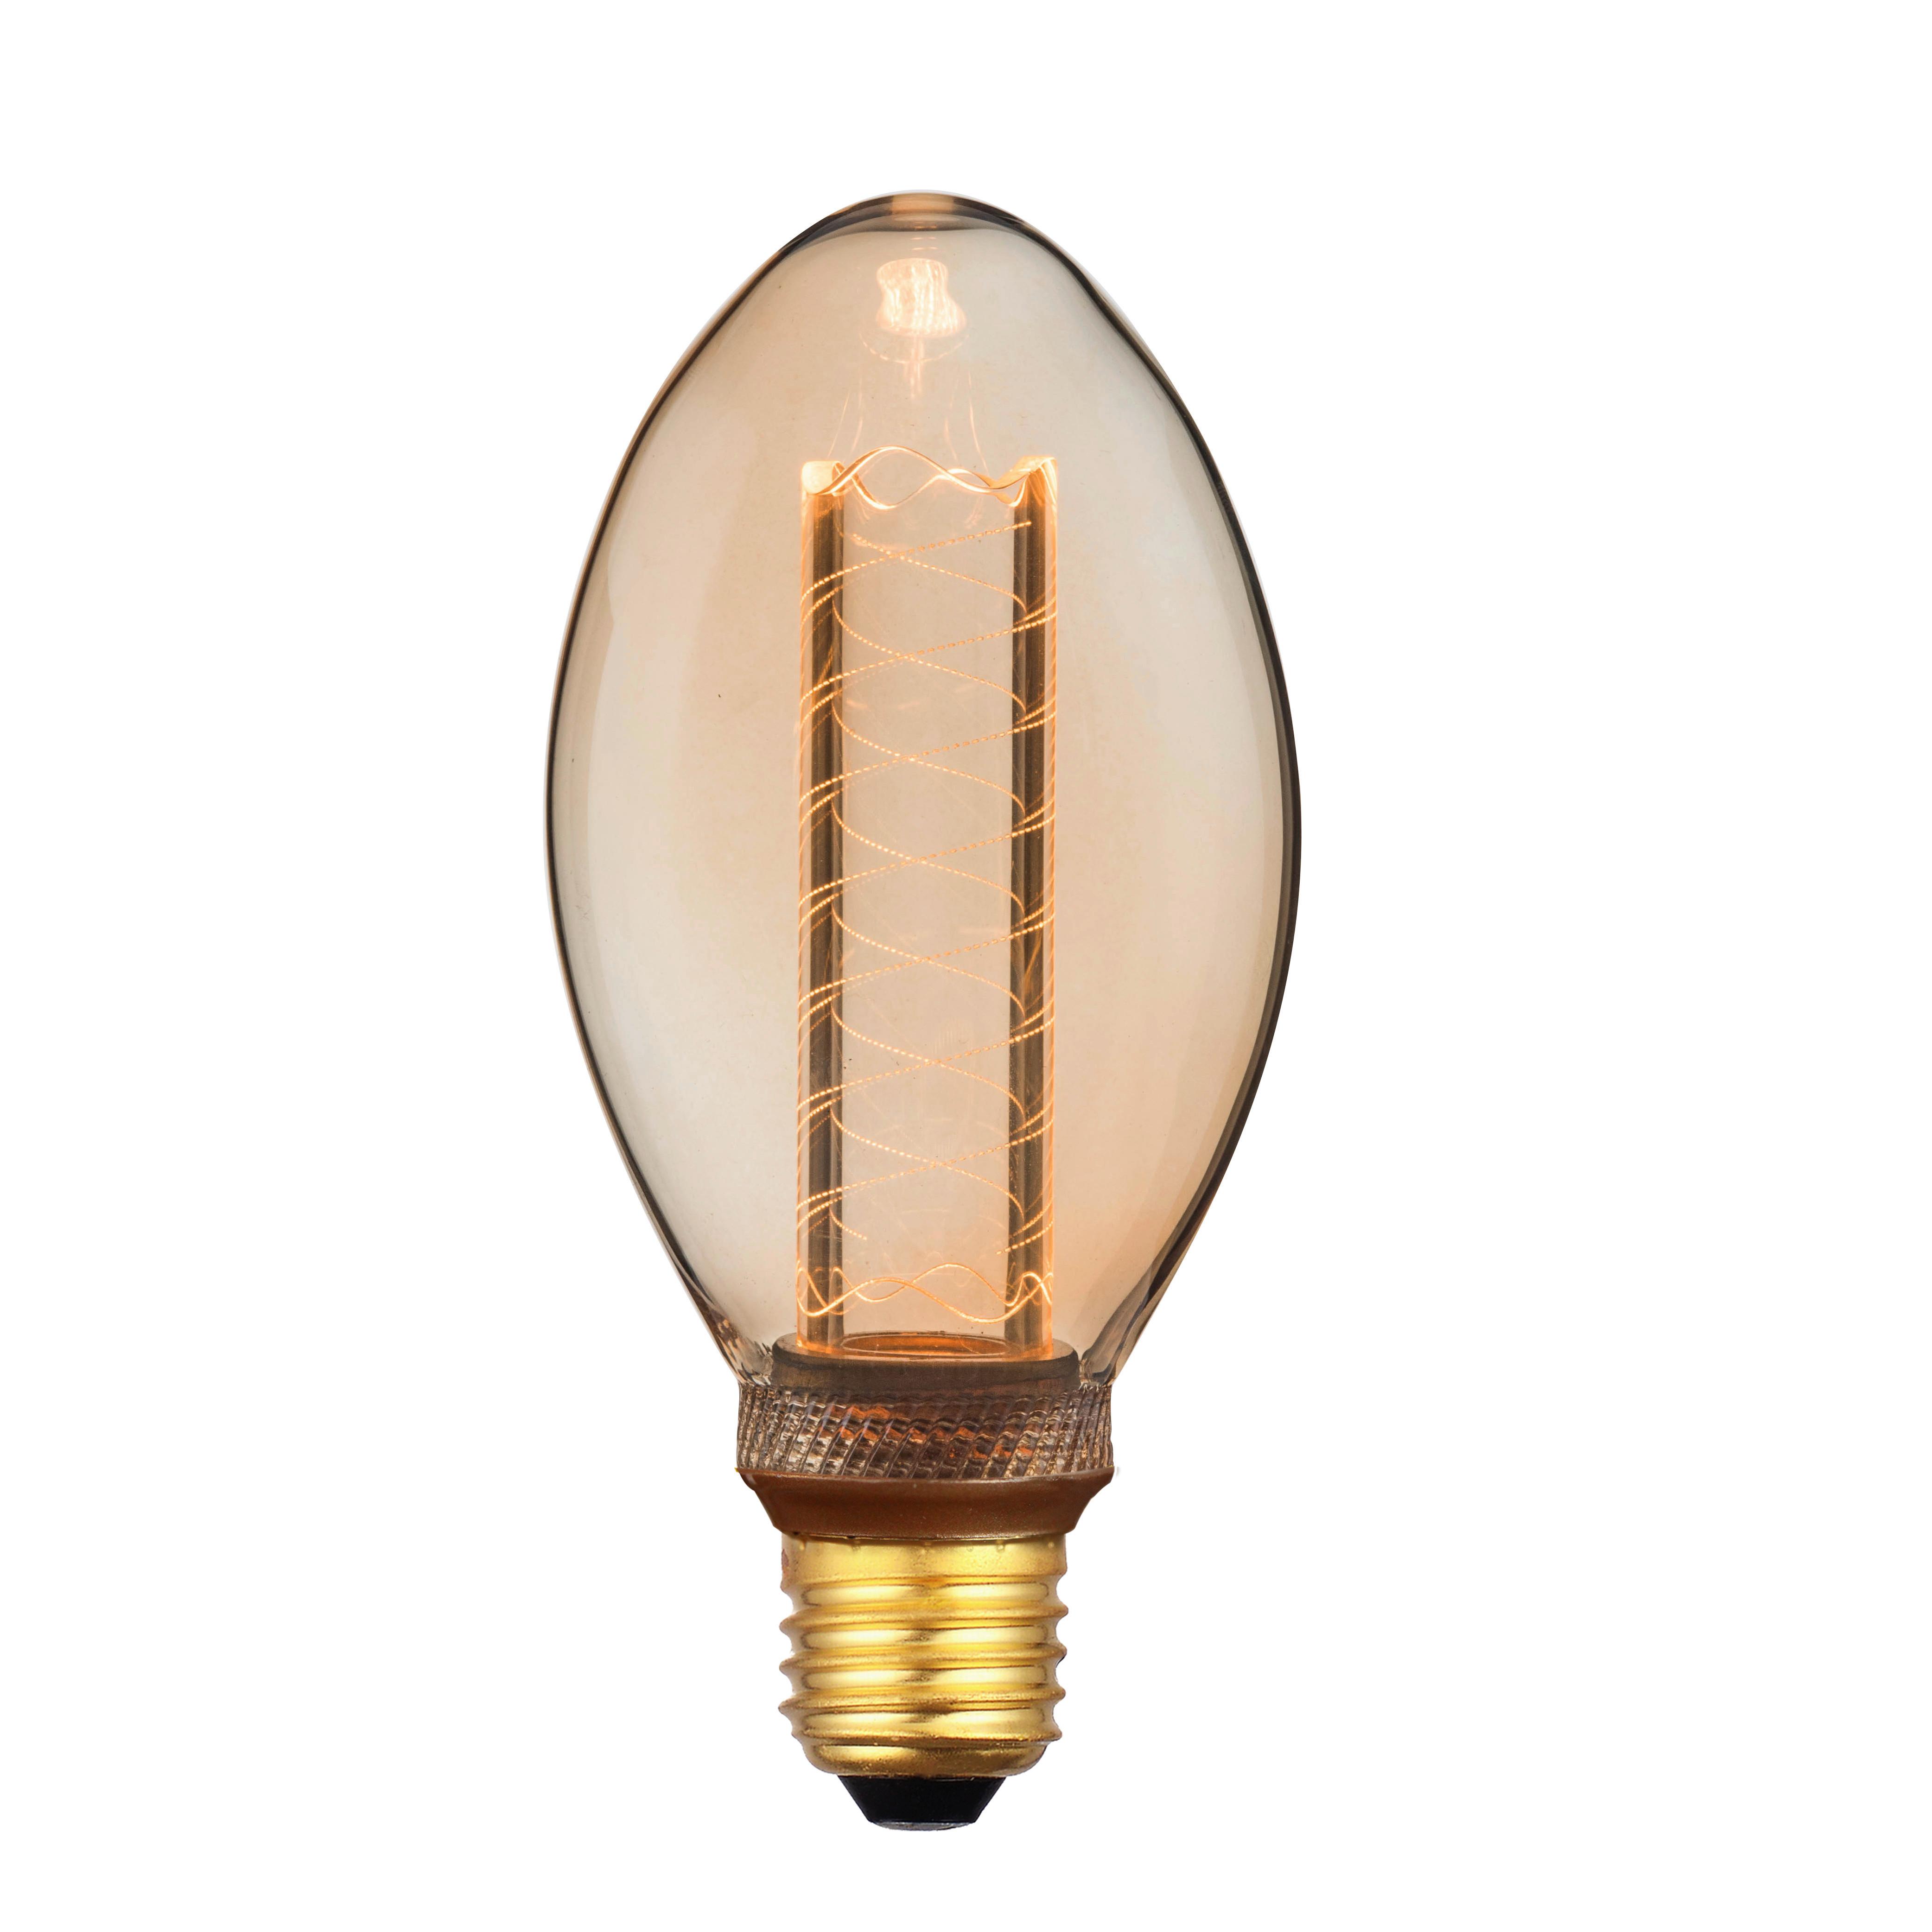 Deko-Leuchtmittel Acrli max. 4 Watt - Bernsteinfarben, ROMANTIK / LANDHAUS, Glas (7,5/16cm) - Modern Living